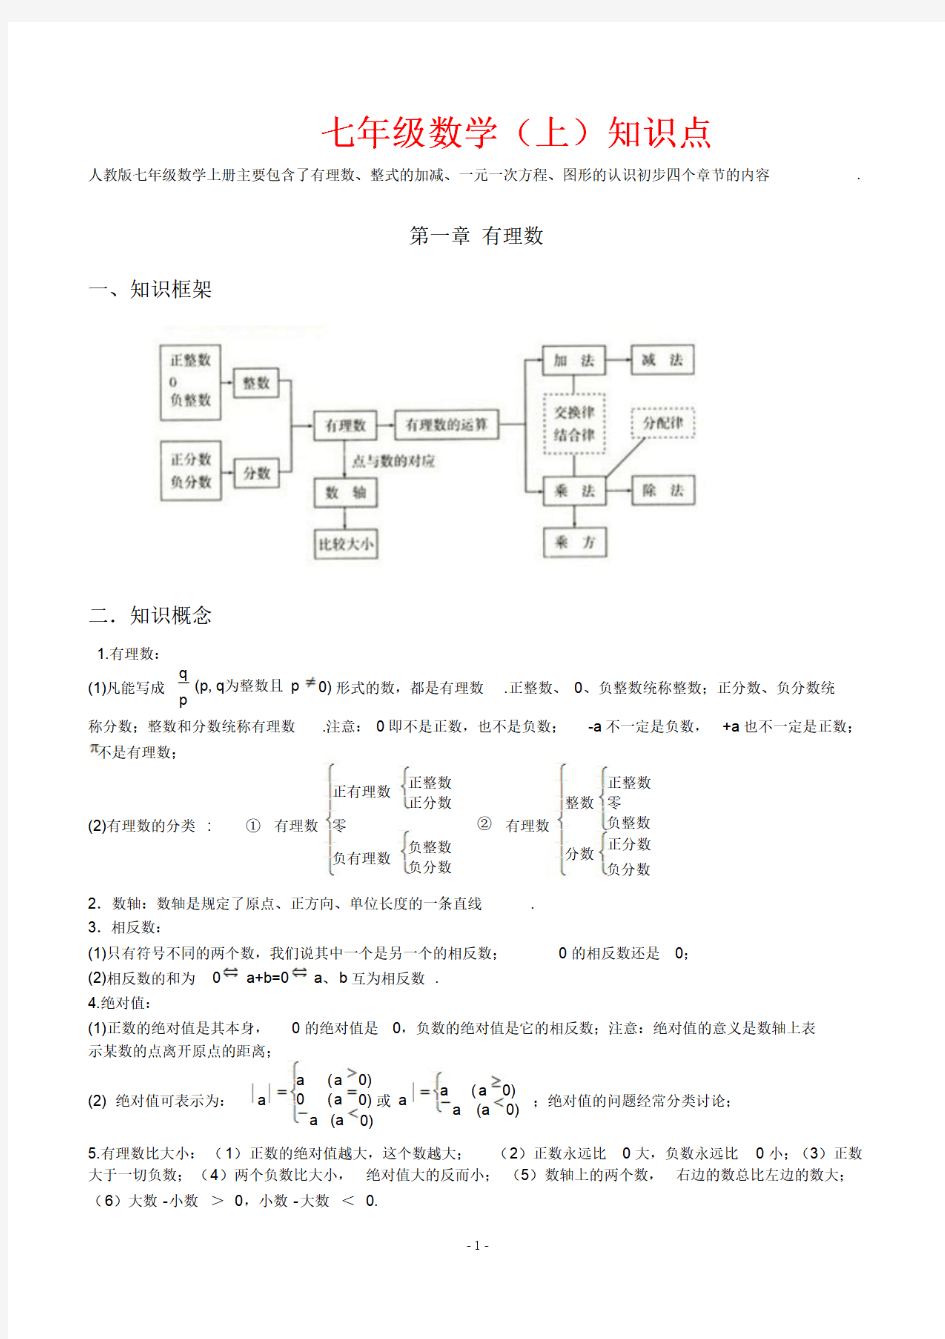 初中数学知识框架图整理,7-9年级数学重点知识点全总结(完美打印版)